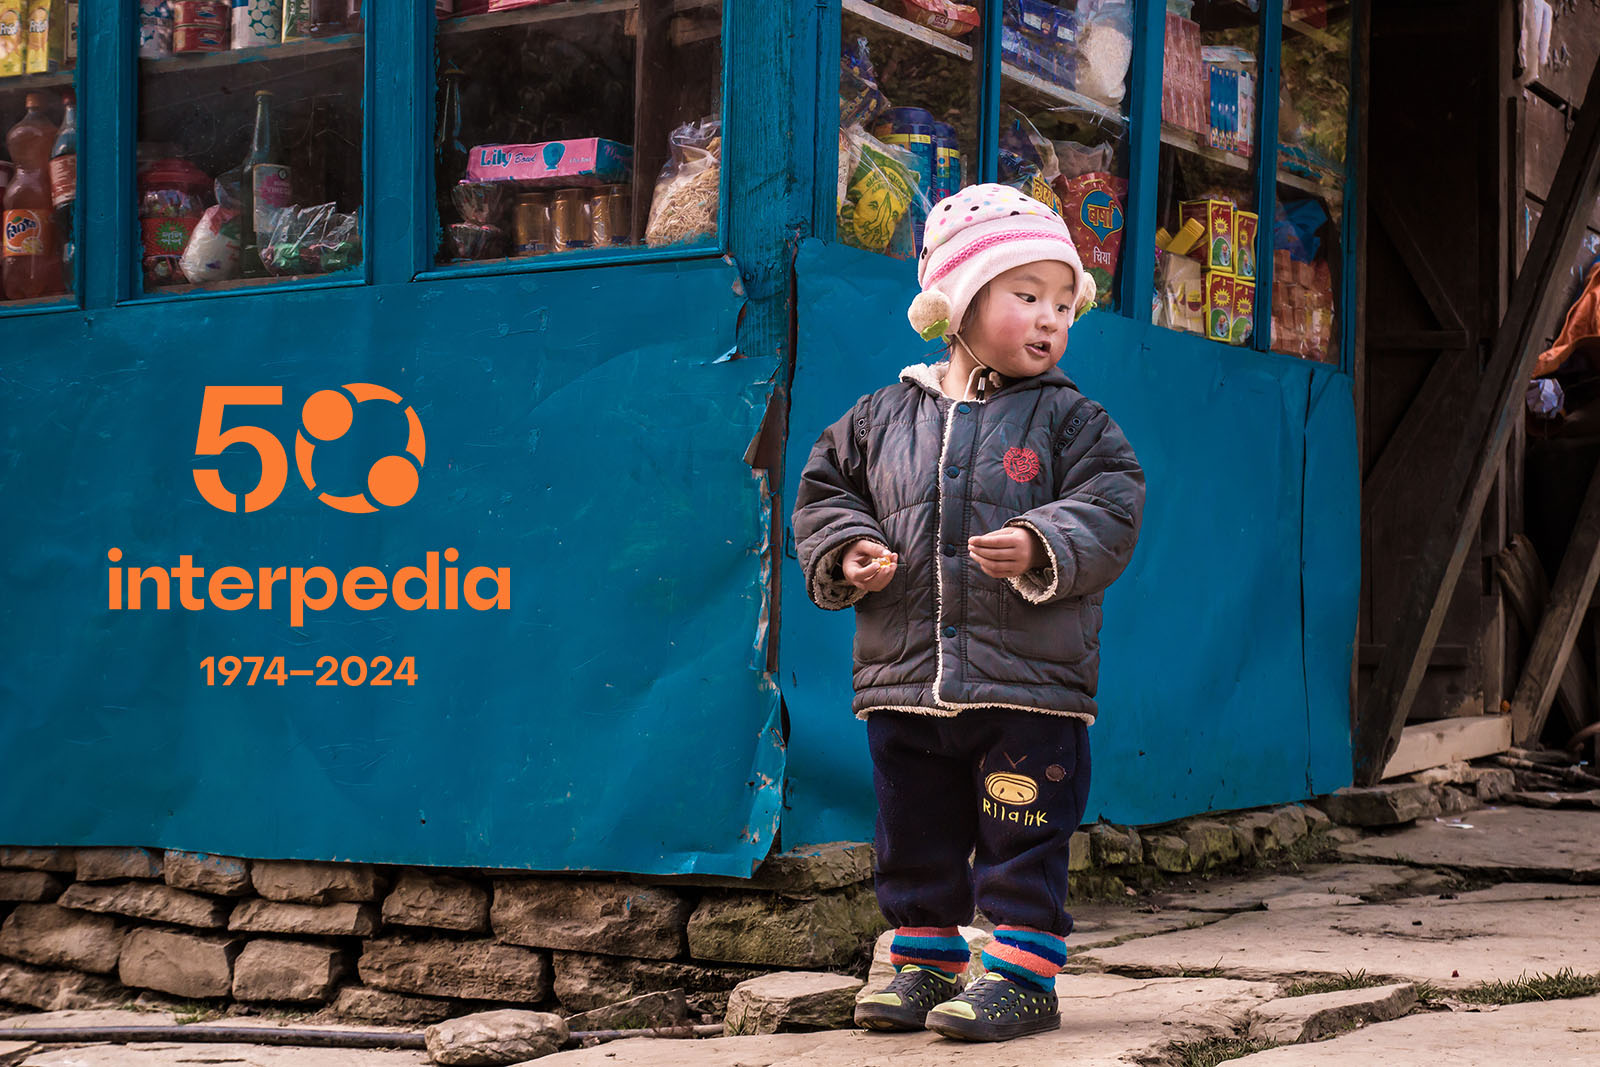 Nepalilainen lapsi seisoo kadulla kaupan edessä. Kuvassa on myös Interpedian 50-vuotisjuhlan logo